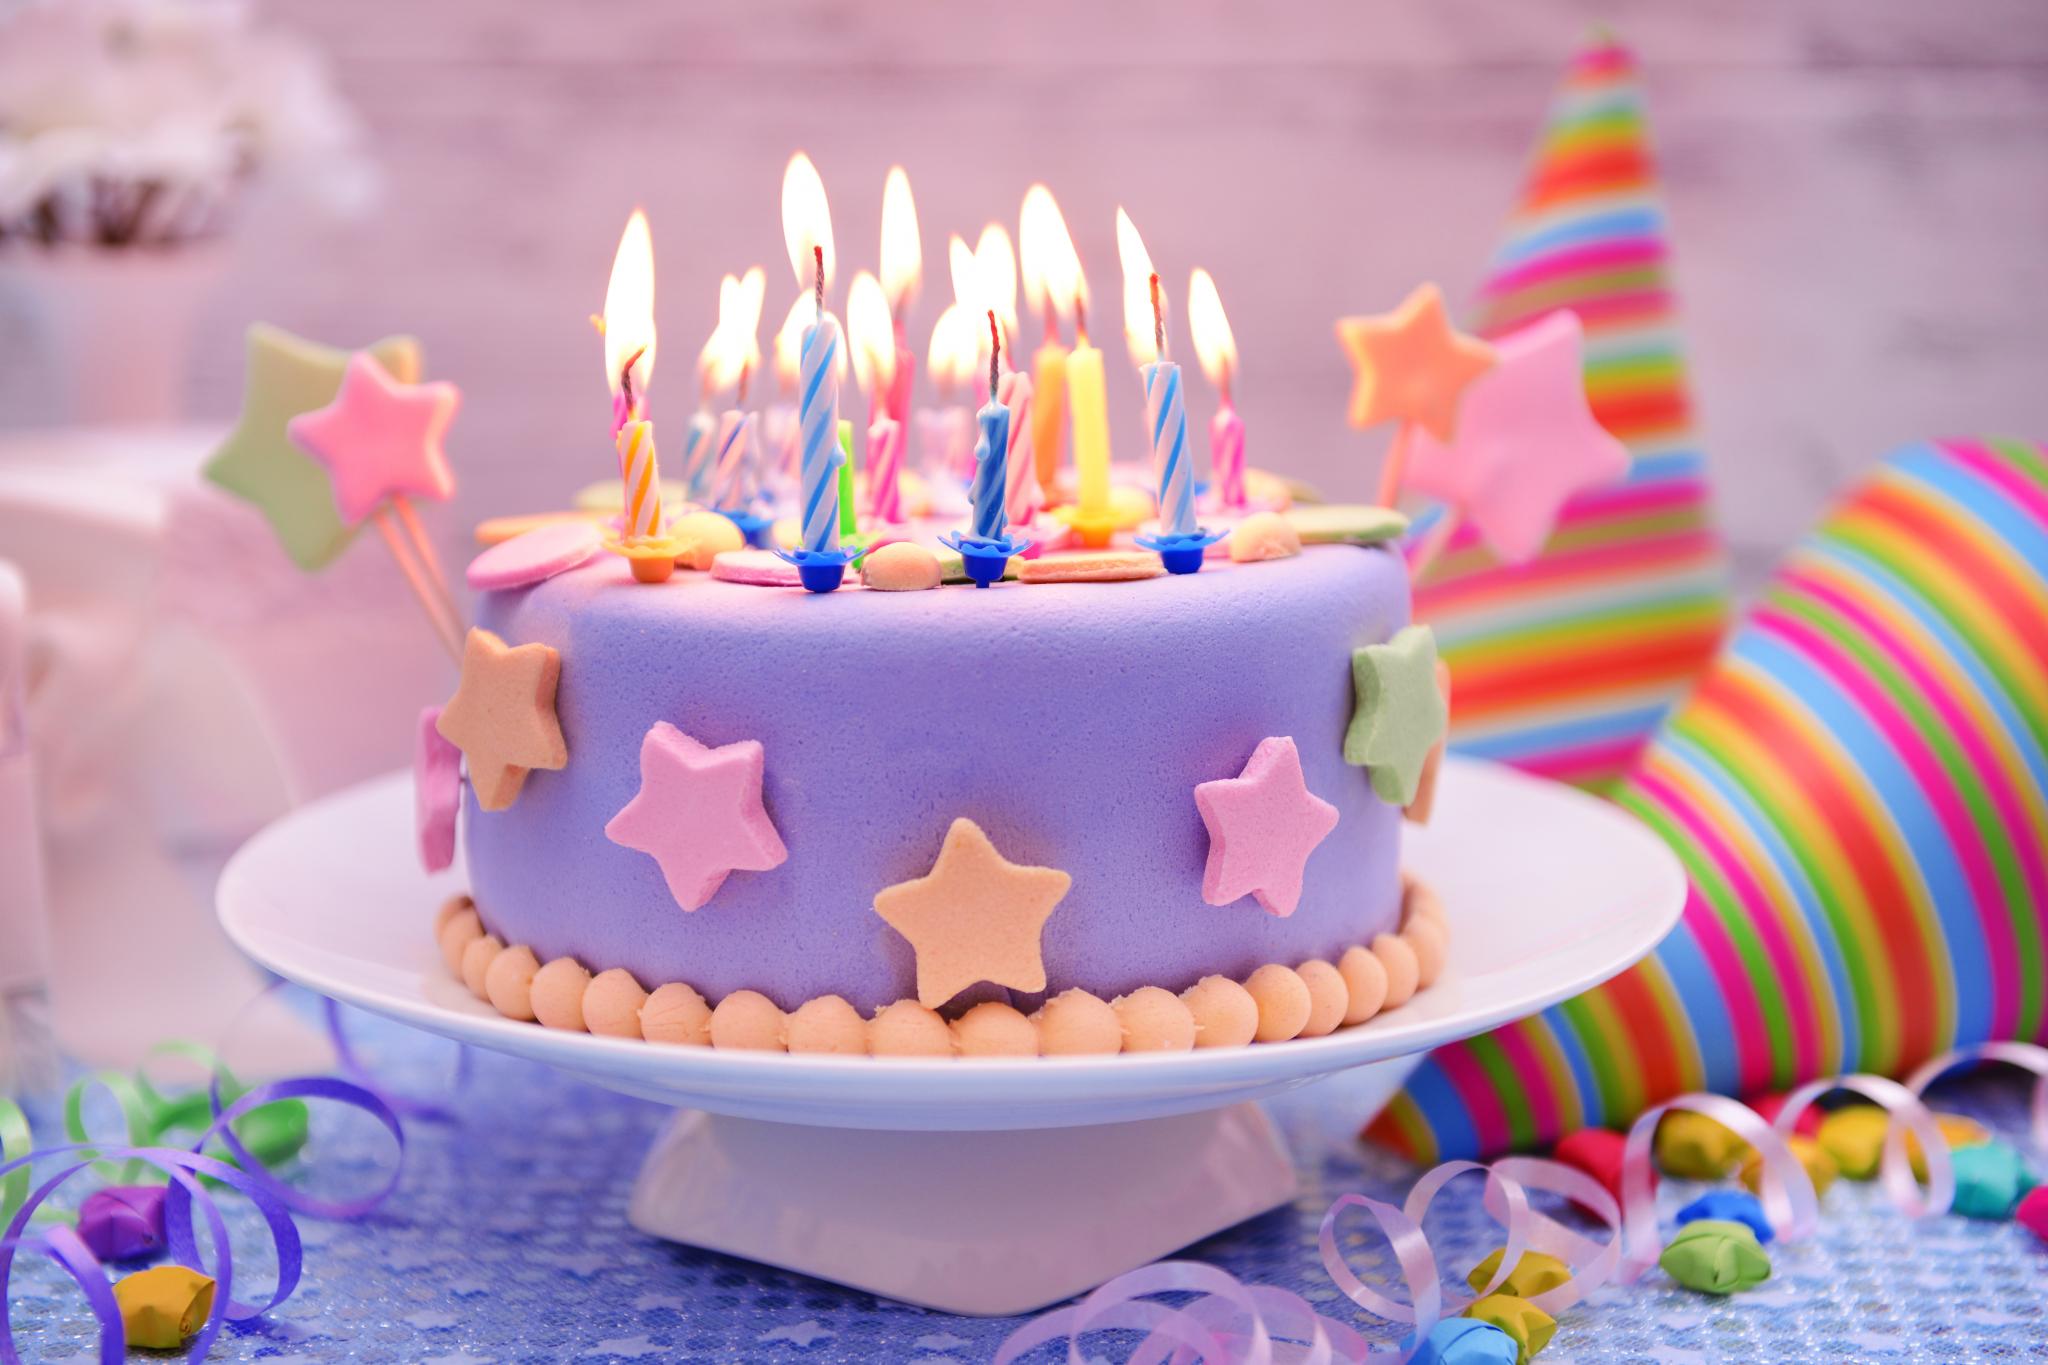 Картинки с тортом на день рождения красивые фото